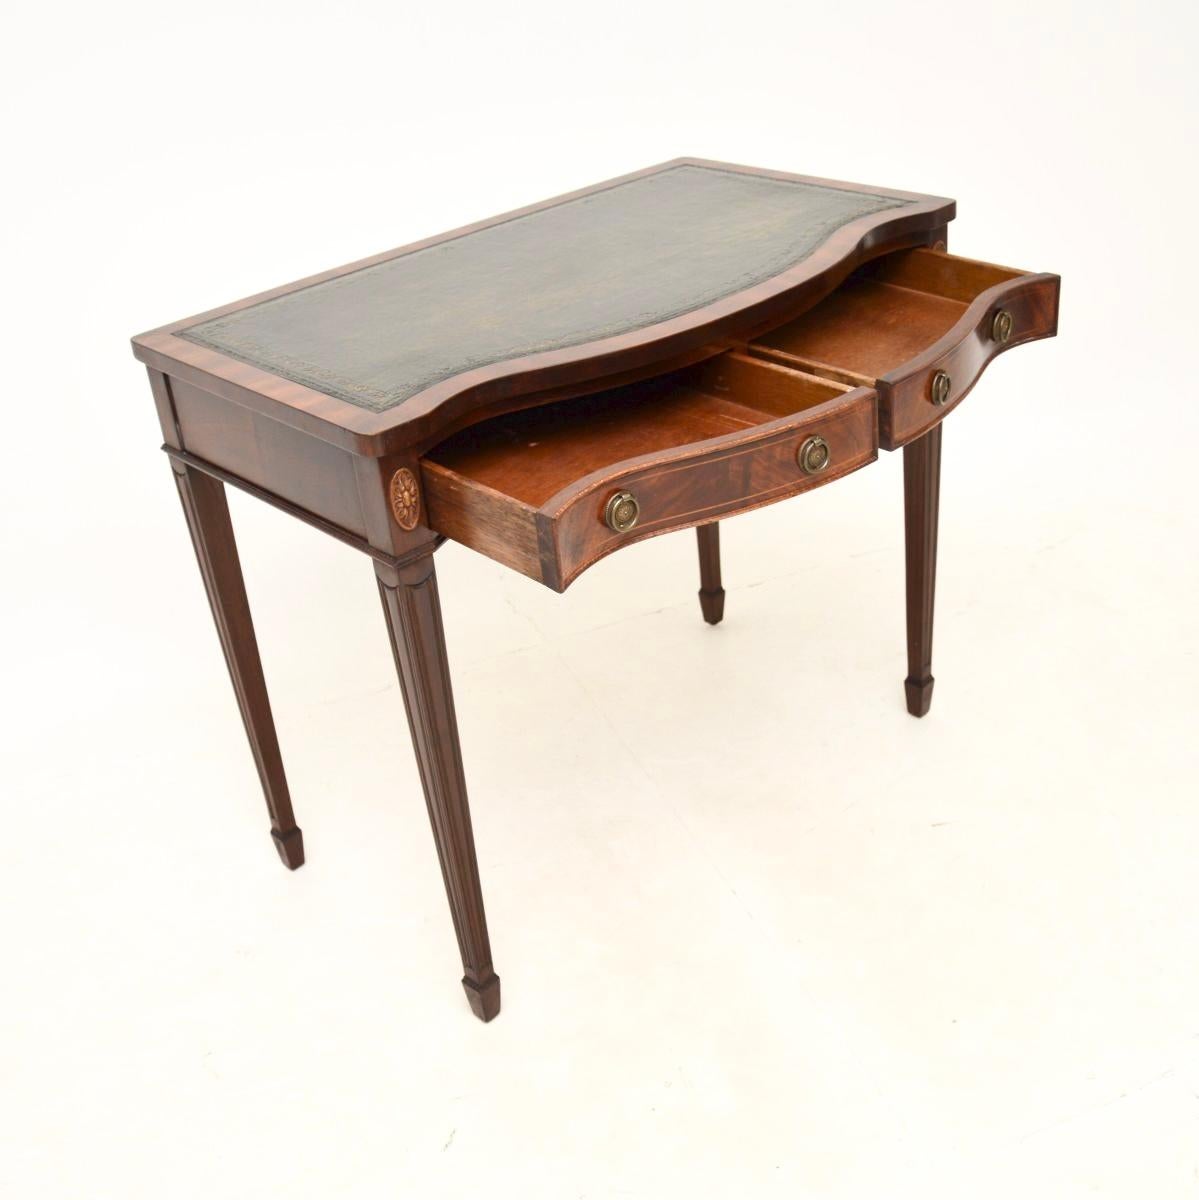 Ein eleganter und nützlicher antiker Schreibtisch / Konsolentisch mit Lederplatte. Es wurde in England hergestellt, ist im georgianischen Stil gehalten und stammt aus den 1950er Jahren.

Die Qualität ist hervorragend und die Größe ist sehr